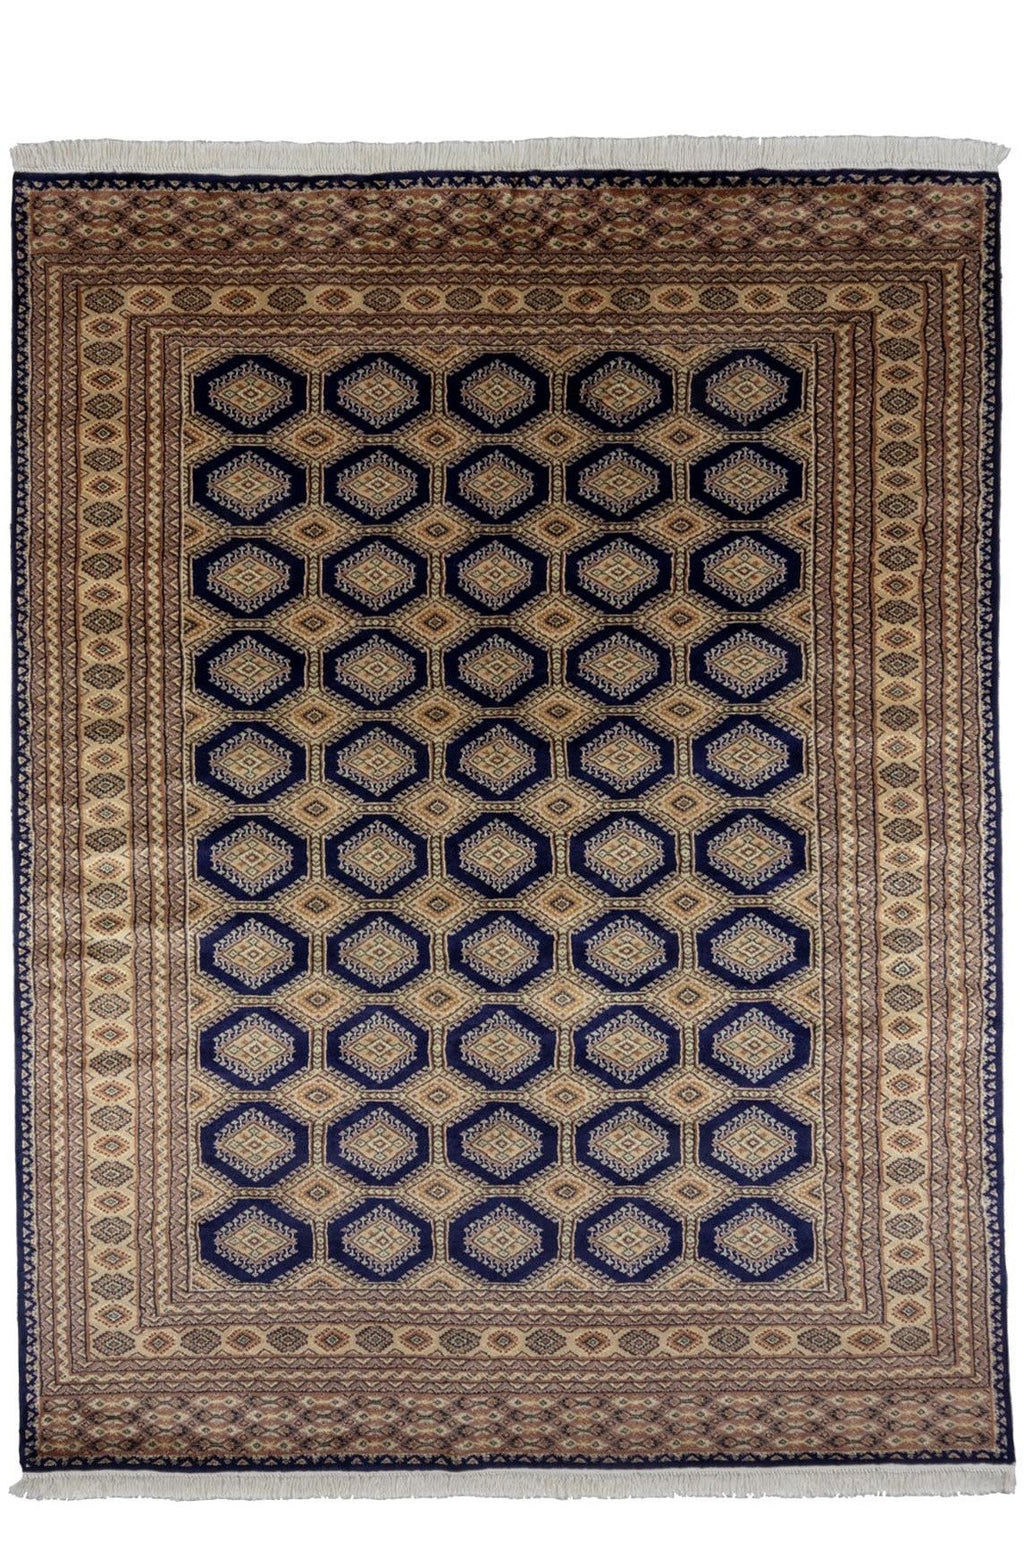 パキスタン絨毯(197x253cm)青&ベージュ ペルシャ【絨毯専門店】